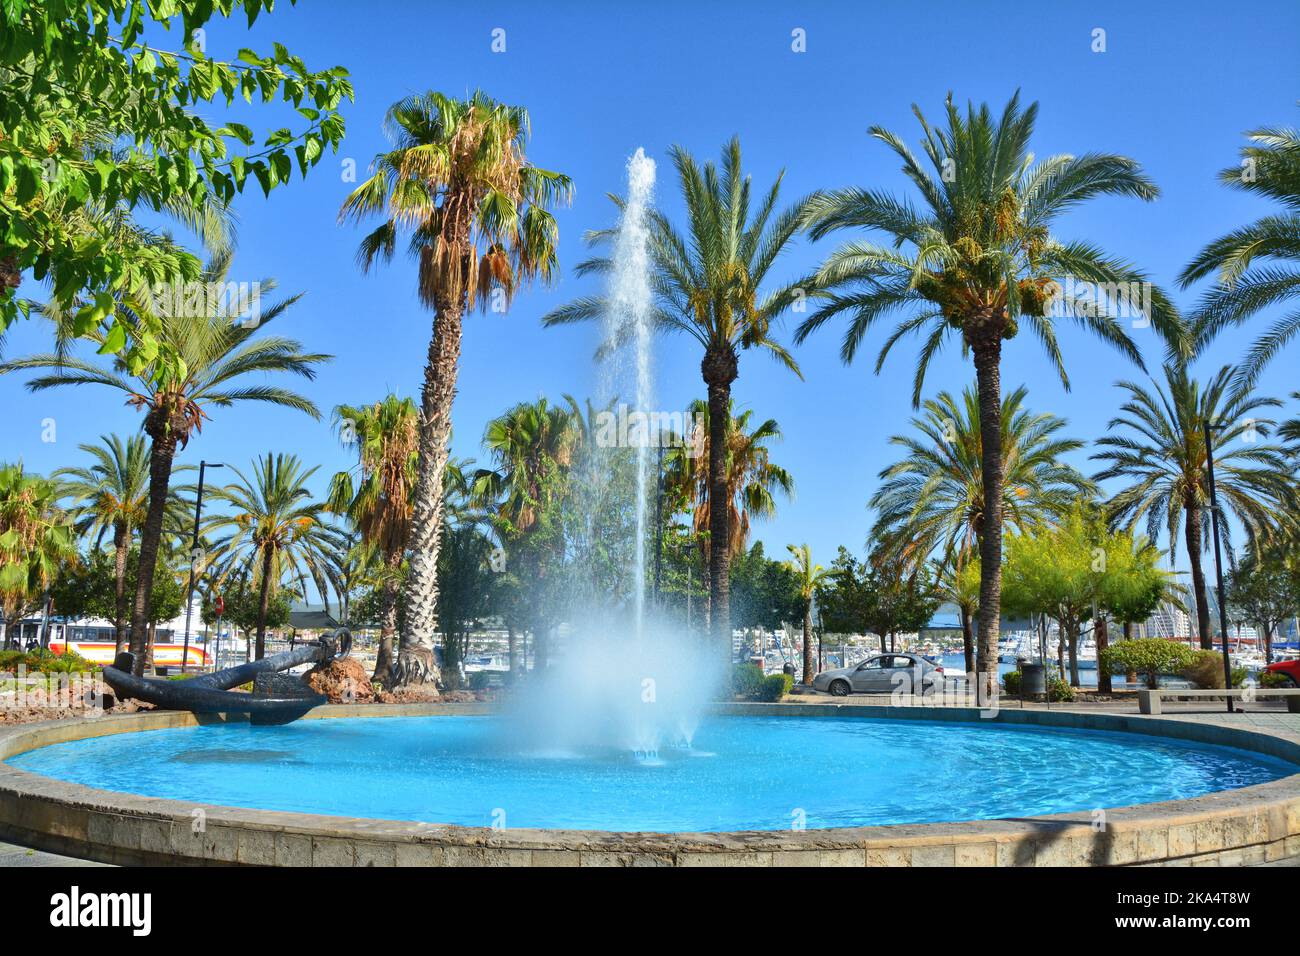 La fontana della città di Sant Antoni de Portmany sull'isola di Ibiza, Baleares, Spagna. Foto Stock